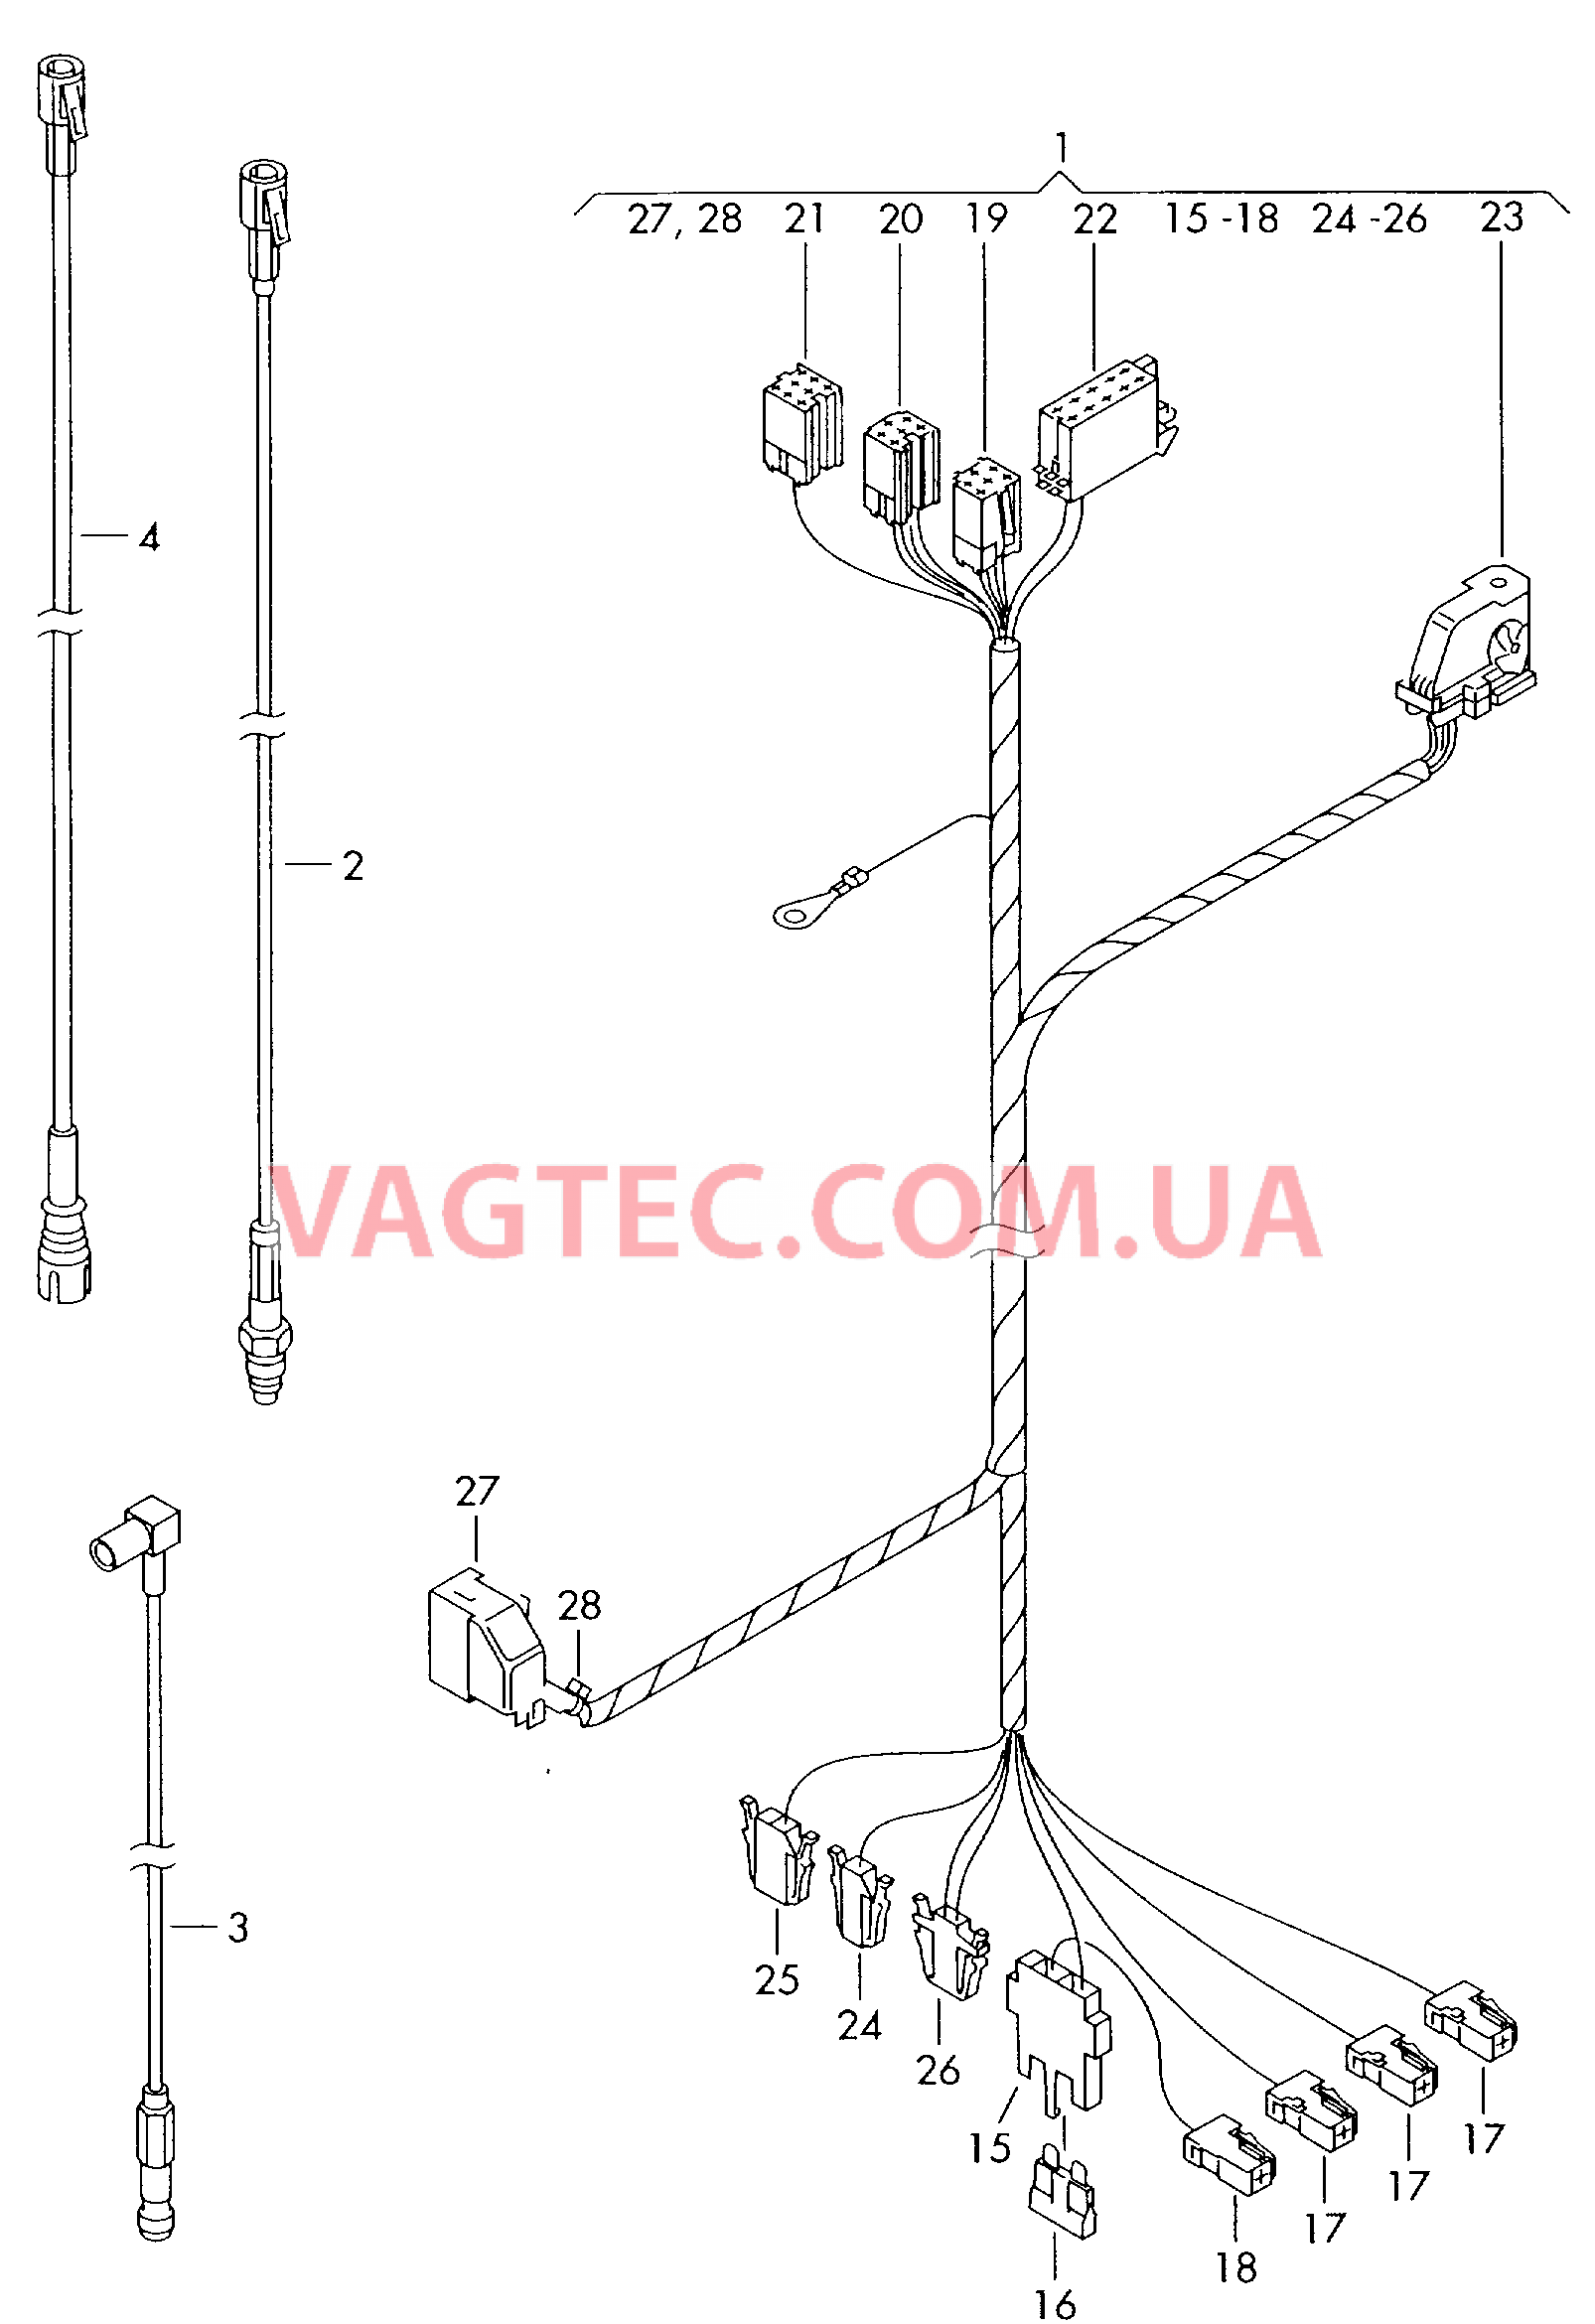 Жгут проводов системы навигации  Антенный кабель                   см. каталог:  для VOLKSWAGEN Transporter 2000